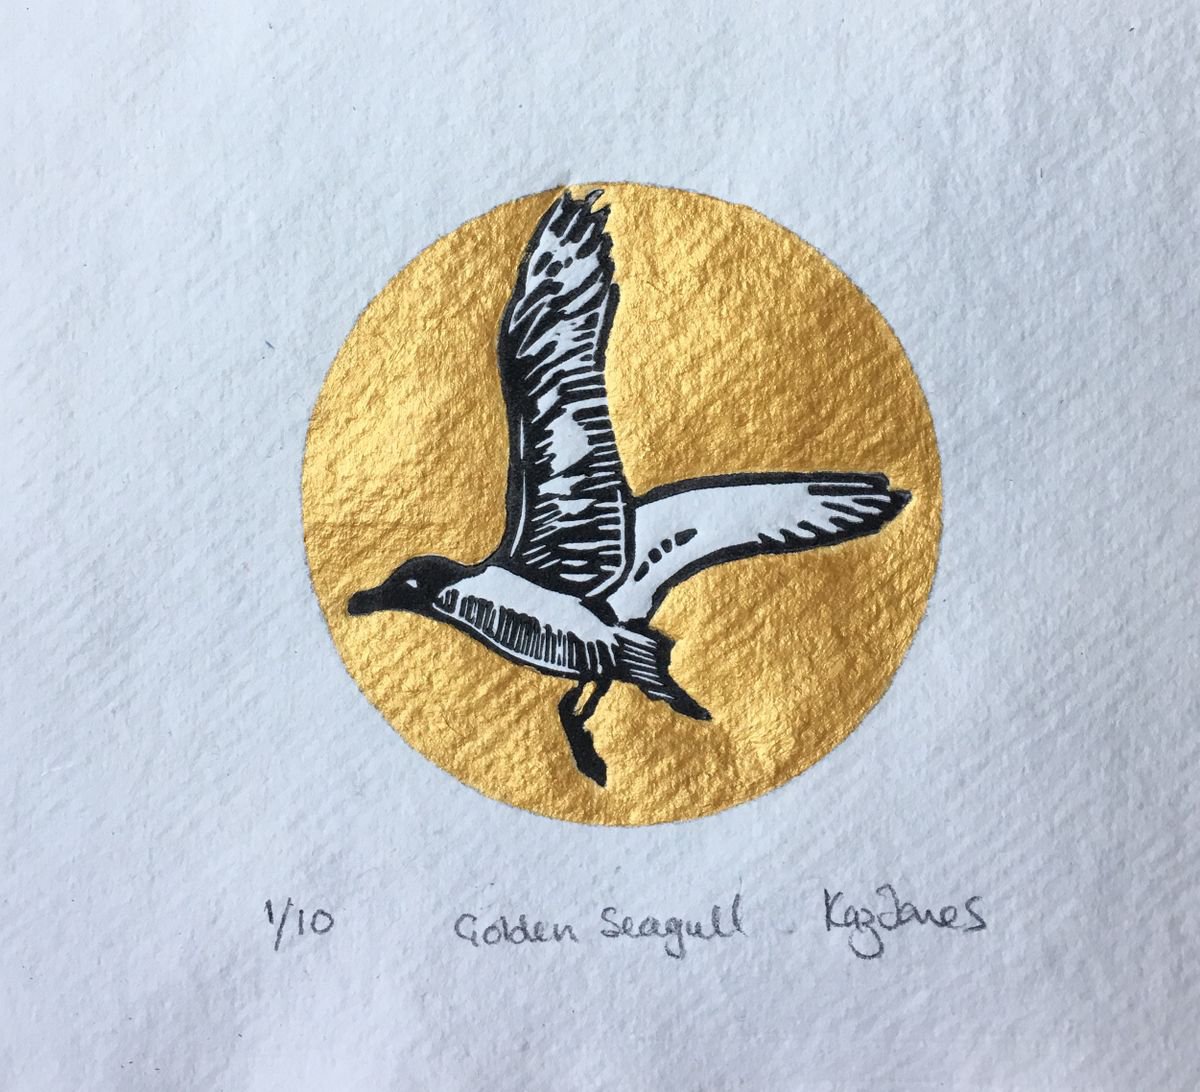 Golden Seagull by Kaz Jones